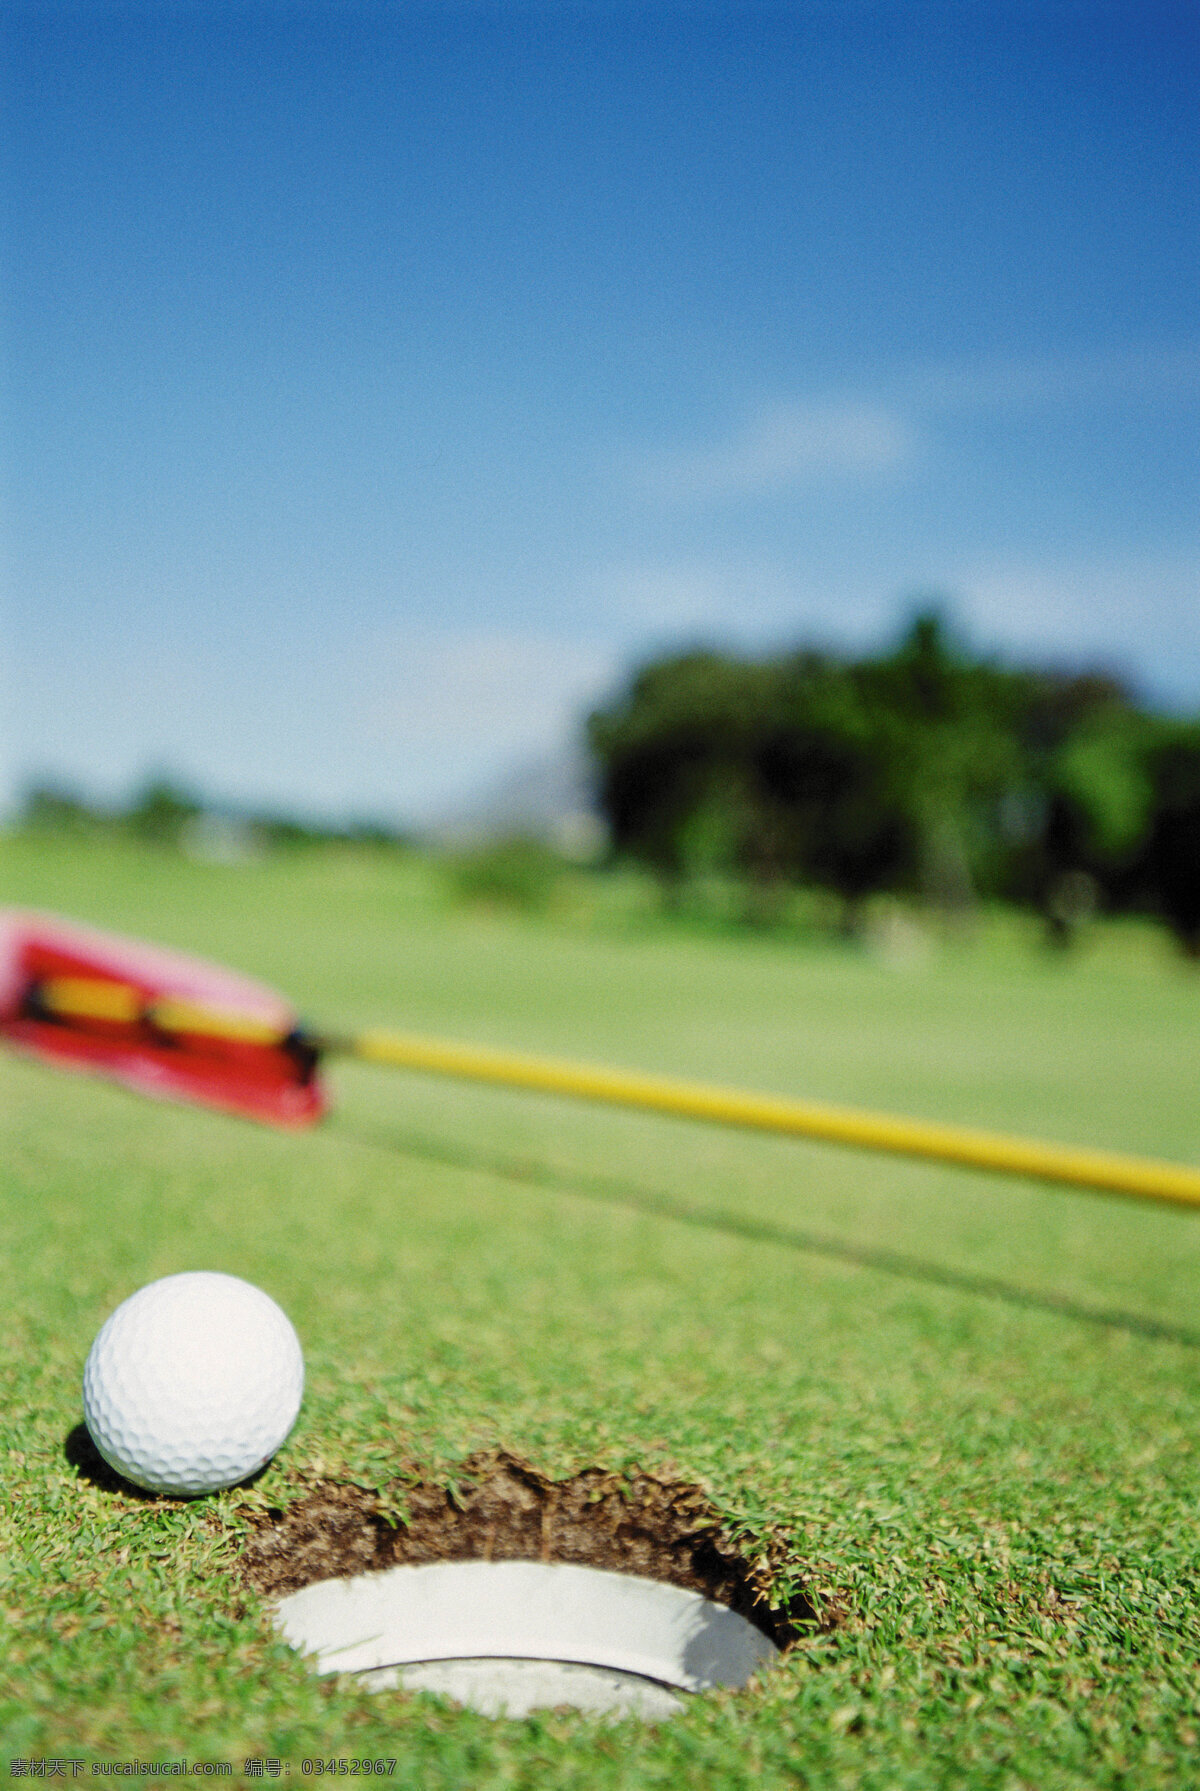 高尔夫球 特写 球场 球杆 草地 贵族运动 休闲运动 尊贵运动 体育运动 生活百科 绿色